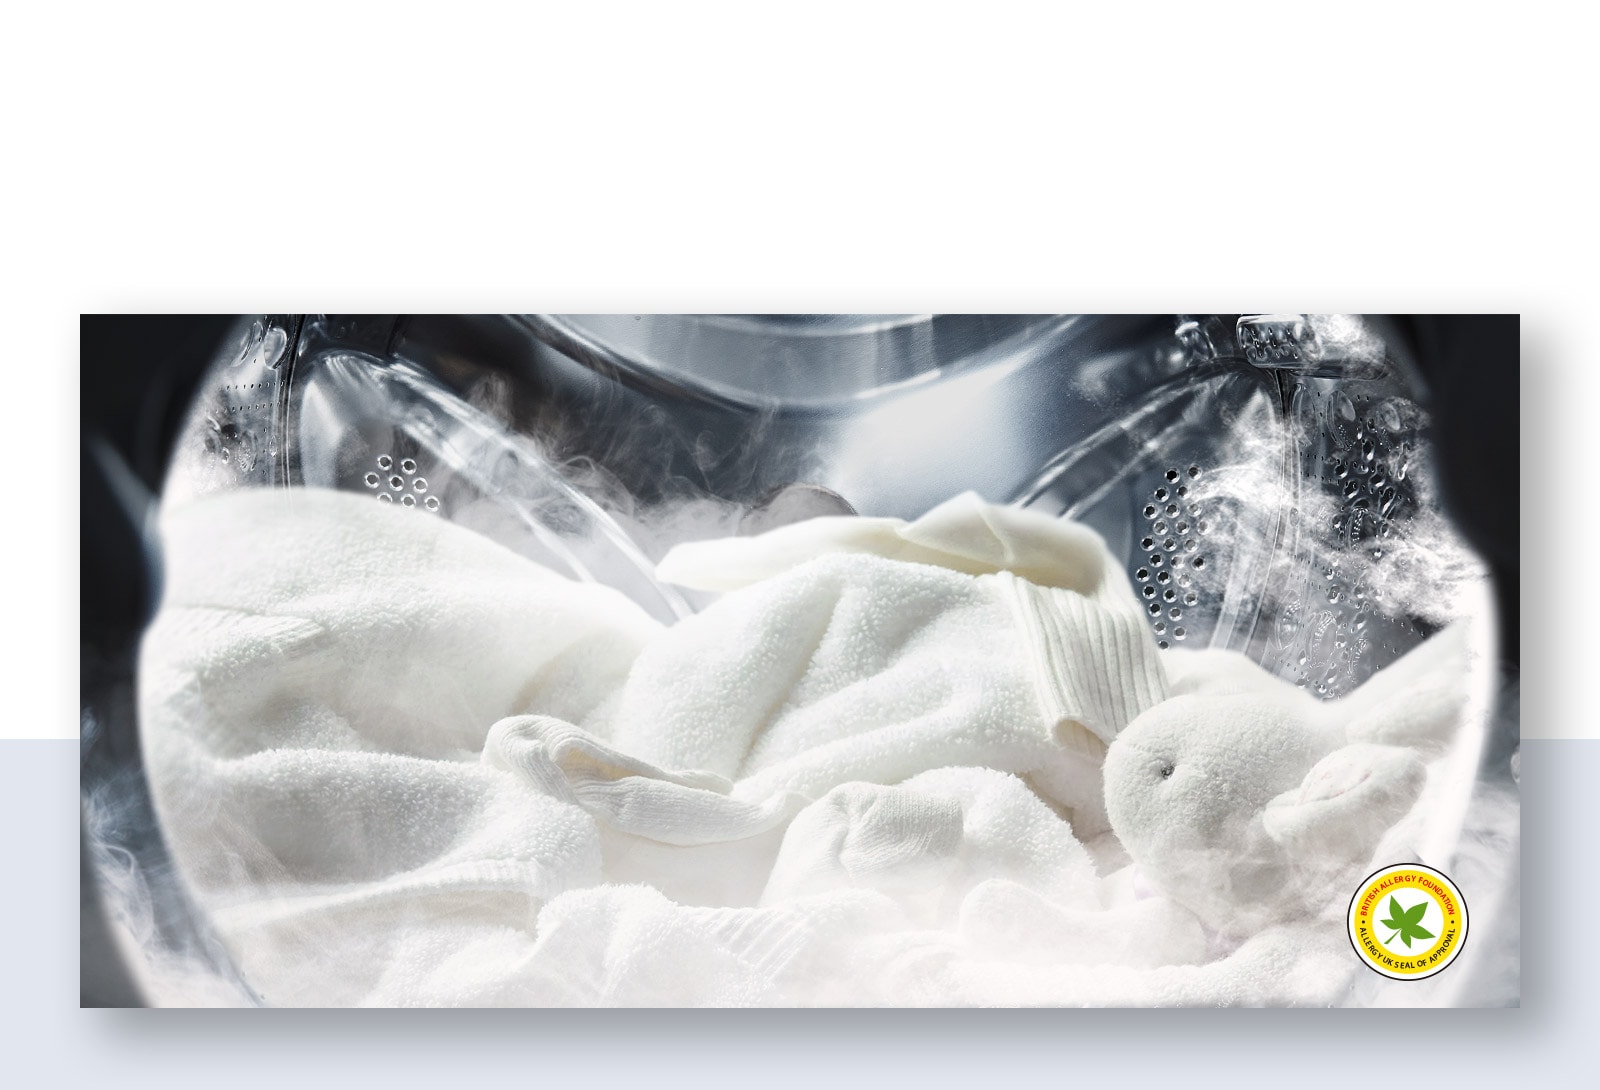 Hình ảnh một chiếc áo choàng trắng mềm mại và thú nhồi bông trong làn hơi nước trong lồng giặt của máy giặt.